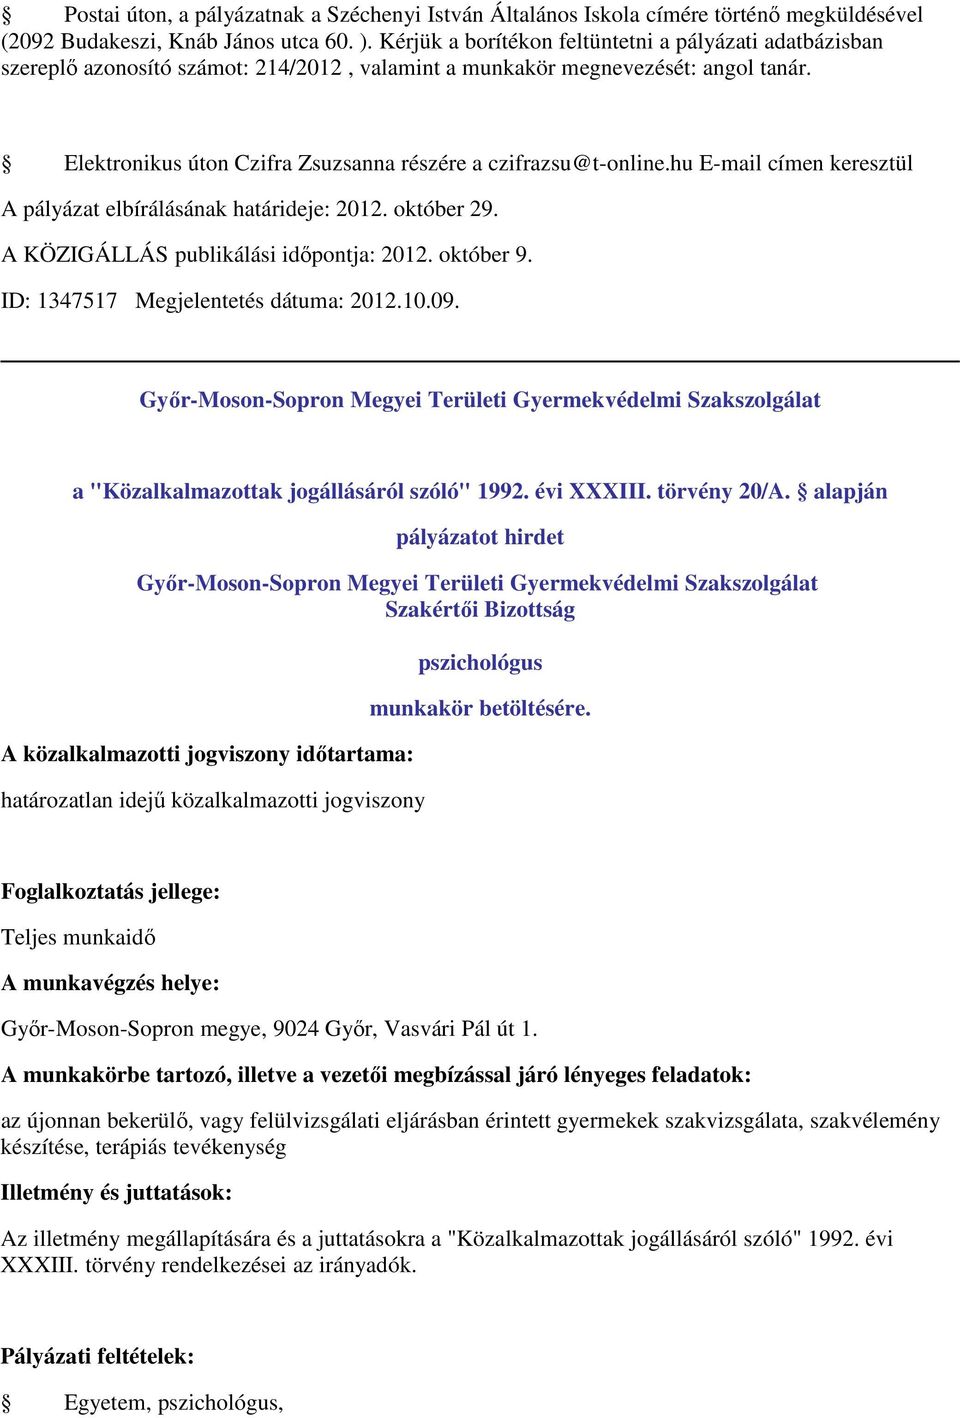 Elektronikus úton Czifra Zsuzsanna részére a czifrazsu@t-online.hu E-mail címen keresztül A pályázat elbírálásának határideje: 2012. október 29. A KÖZIGÁLLÁS publikálási időpontja: 2012. október 9.